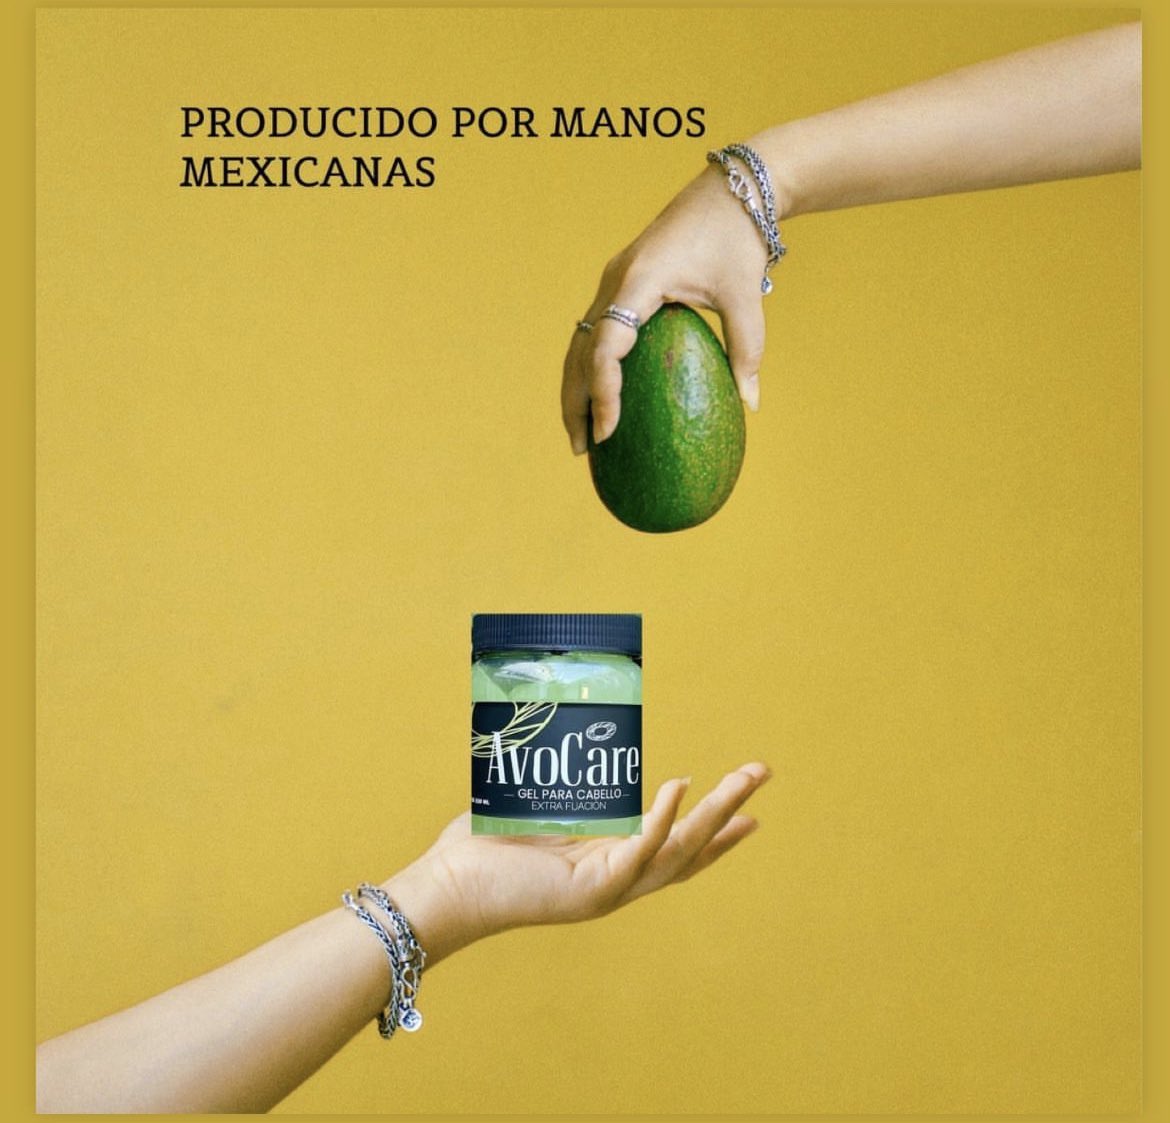 #Aguacate #manosmexicanas #calidad 

Gel para el Cabello a Base de 🥑